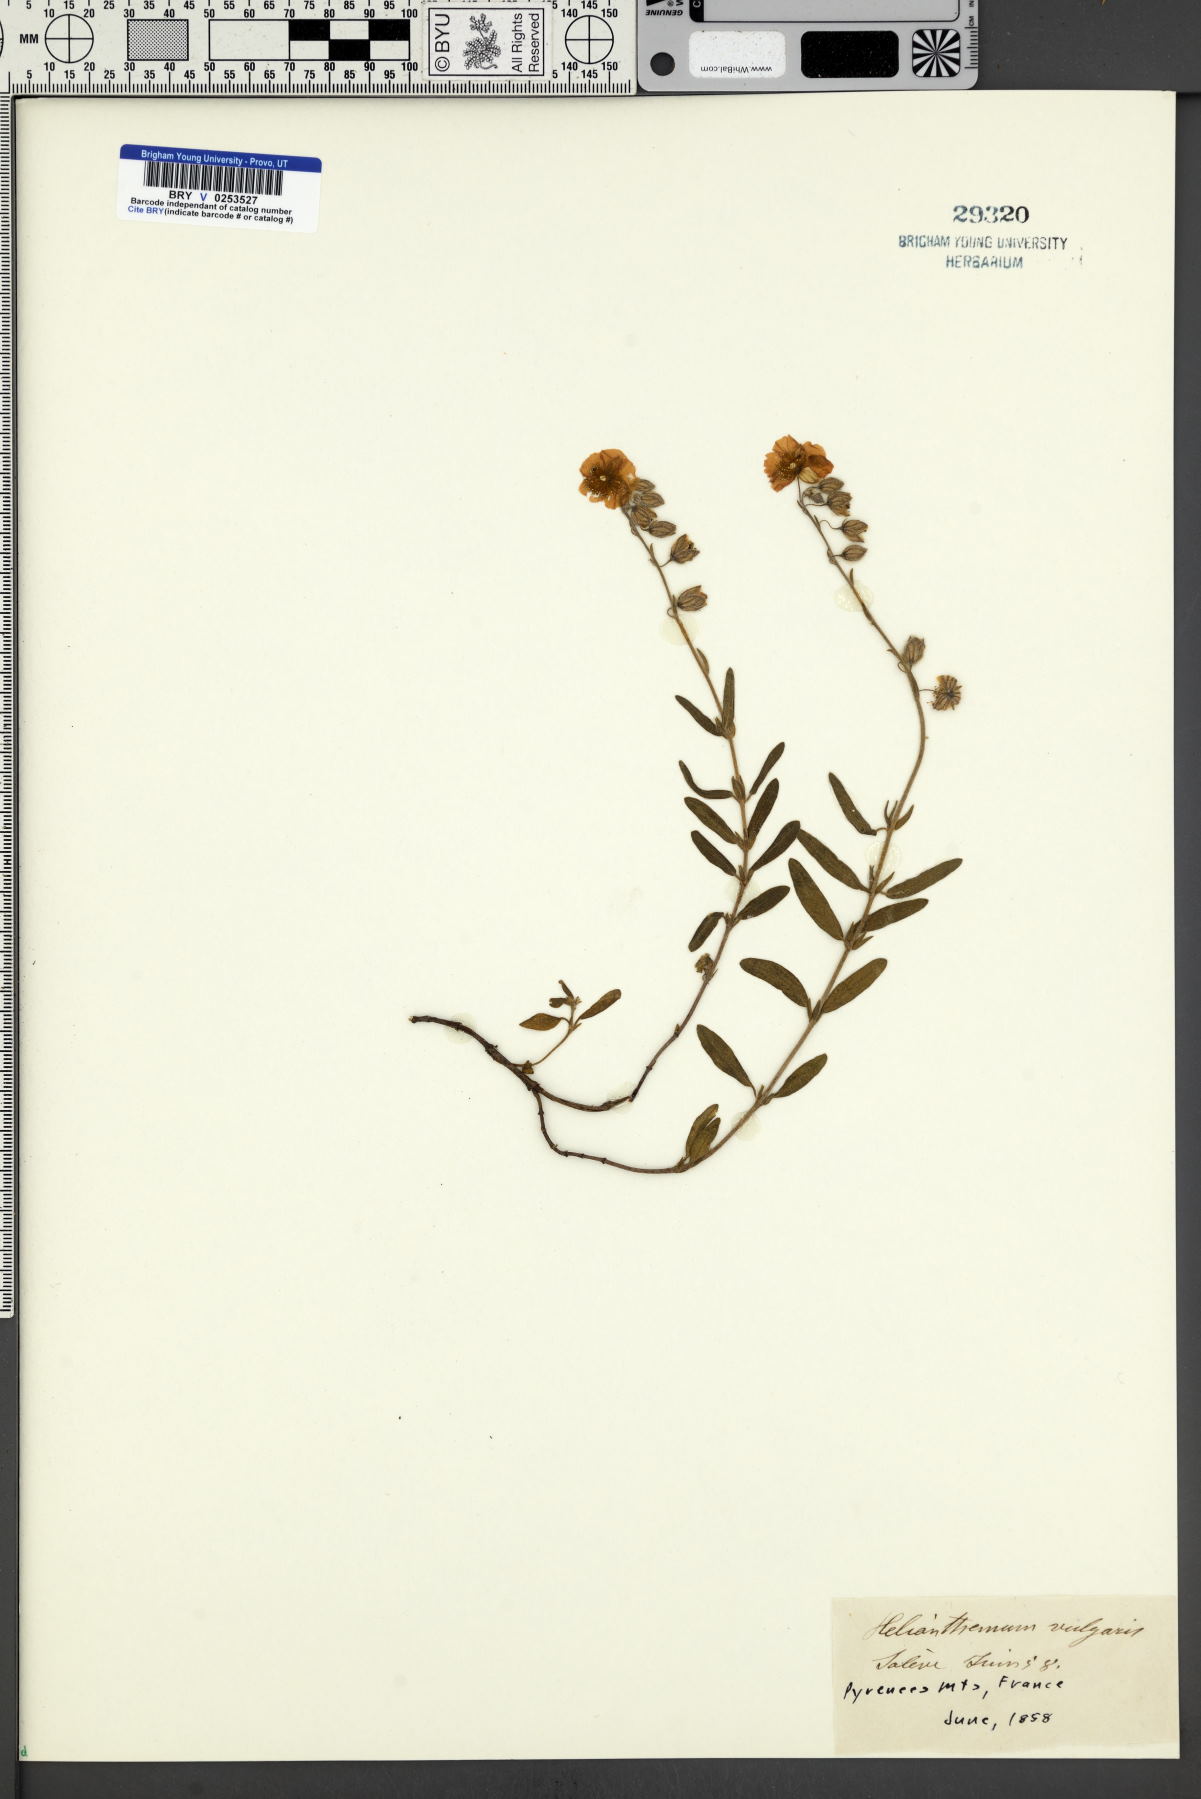 Helianthemum nummularium subsp. obscurum image